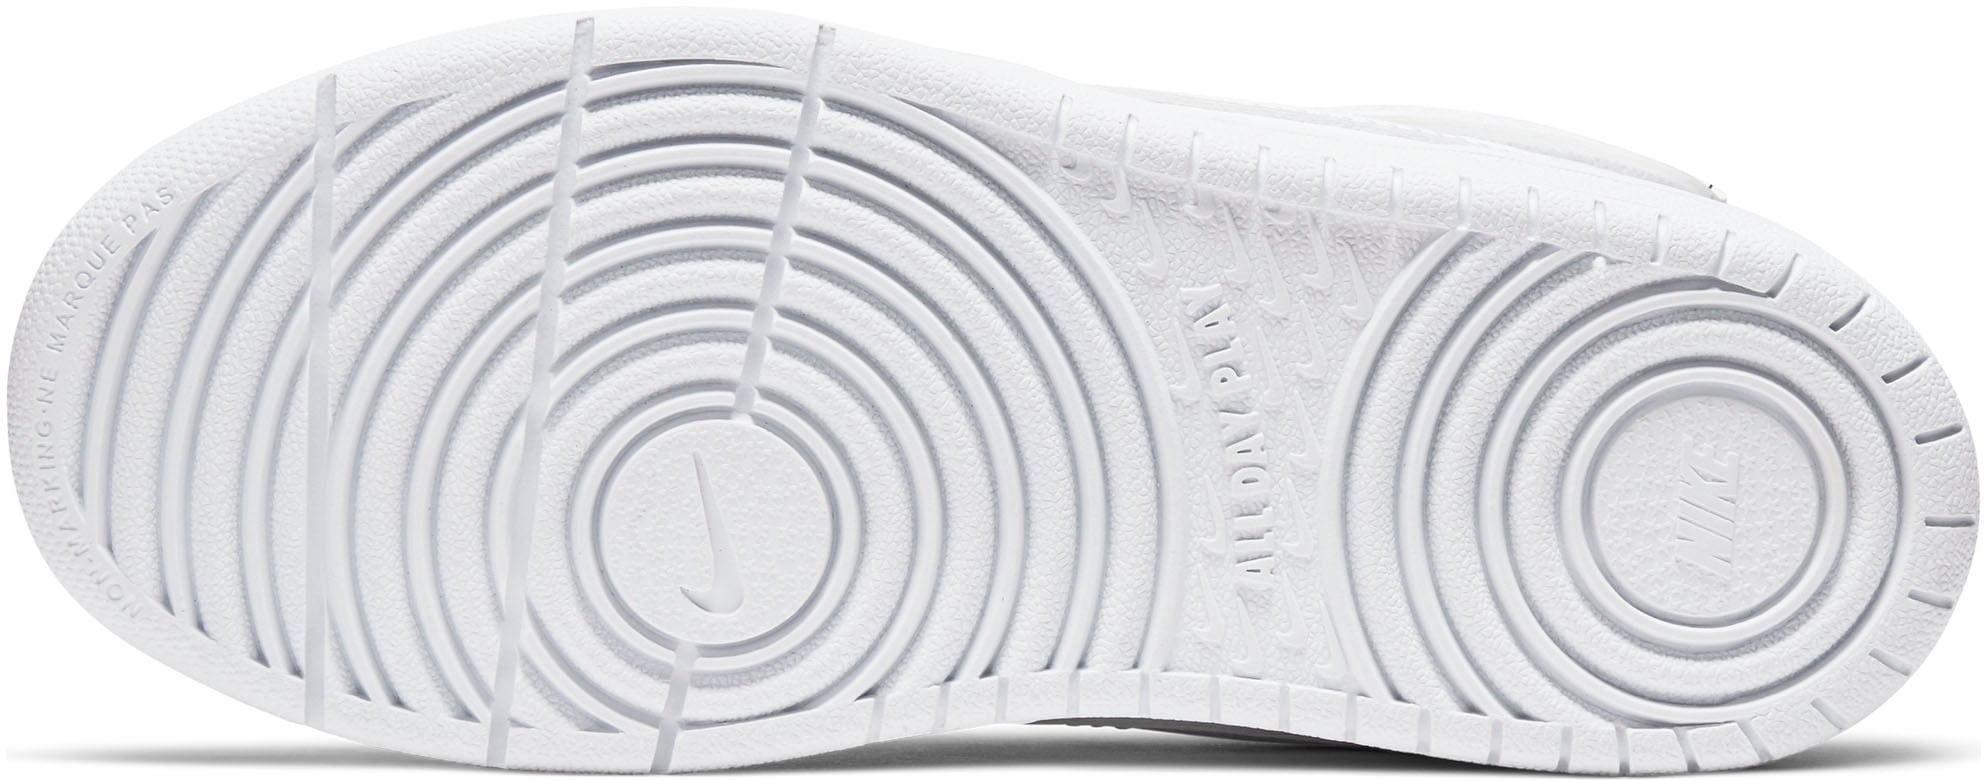 Design des Sneaker Force Spuren auf bei Nike 1 2«, MID Sportswear BOROUGH Air ♕ »COURT den